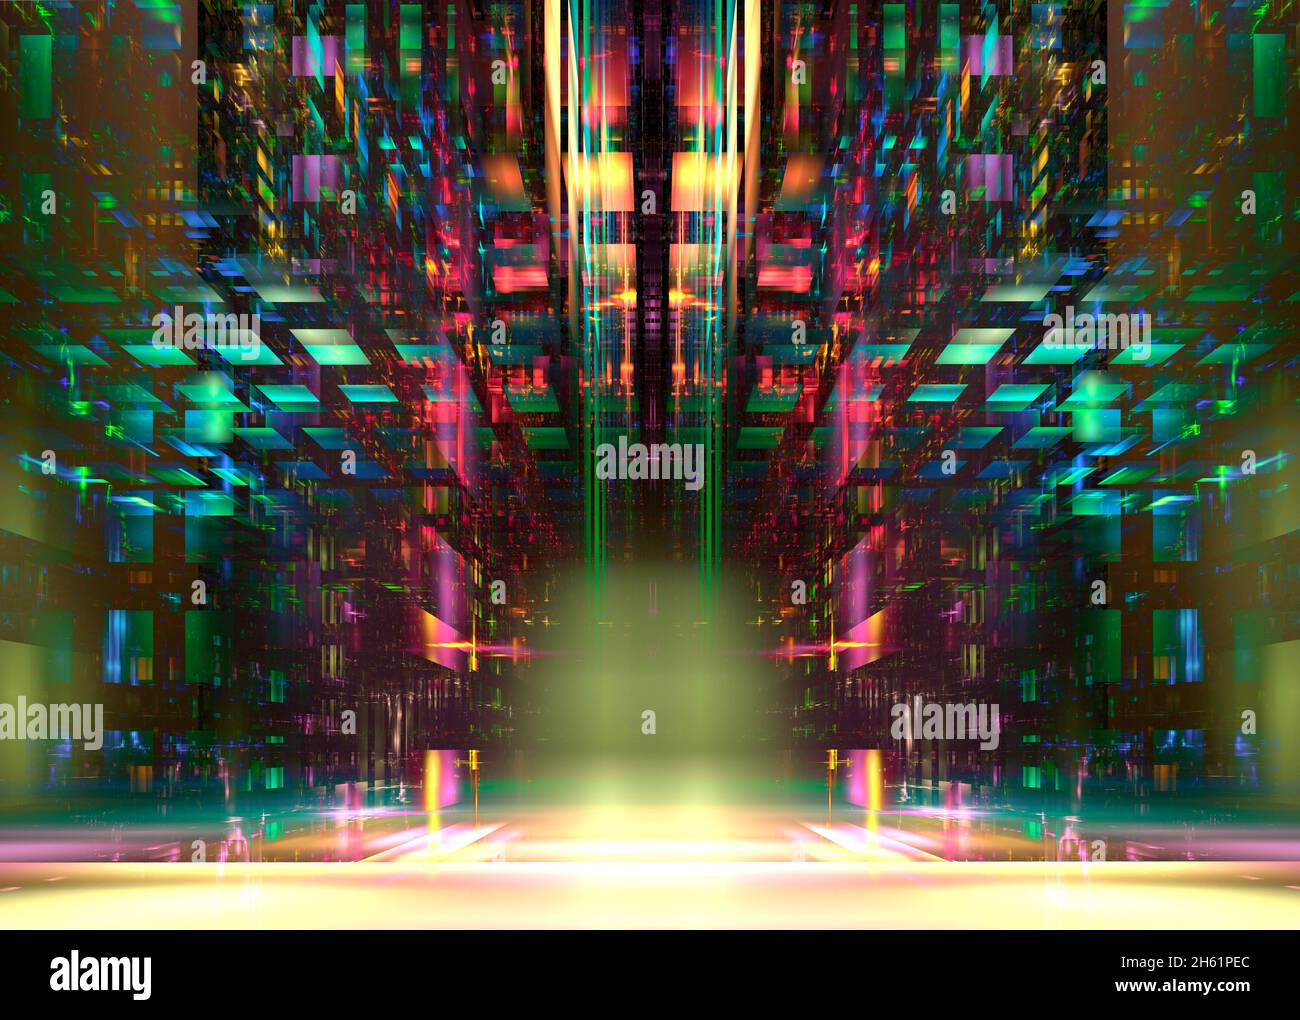 Abstrakter mehrfarbiger Hintergrund - Portal aus Glasblöcken - 3d-Illustration Stockfoto